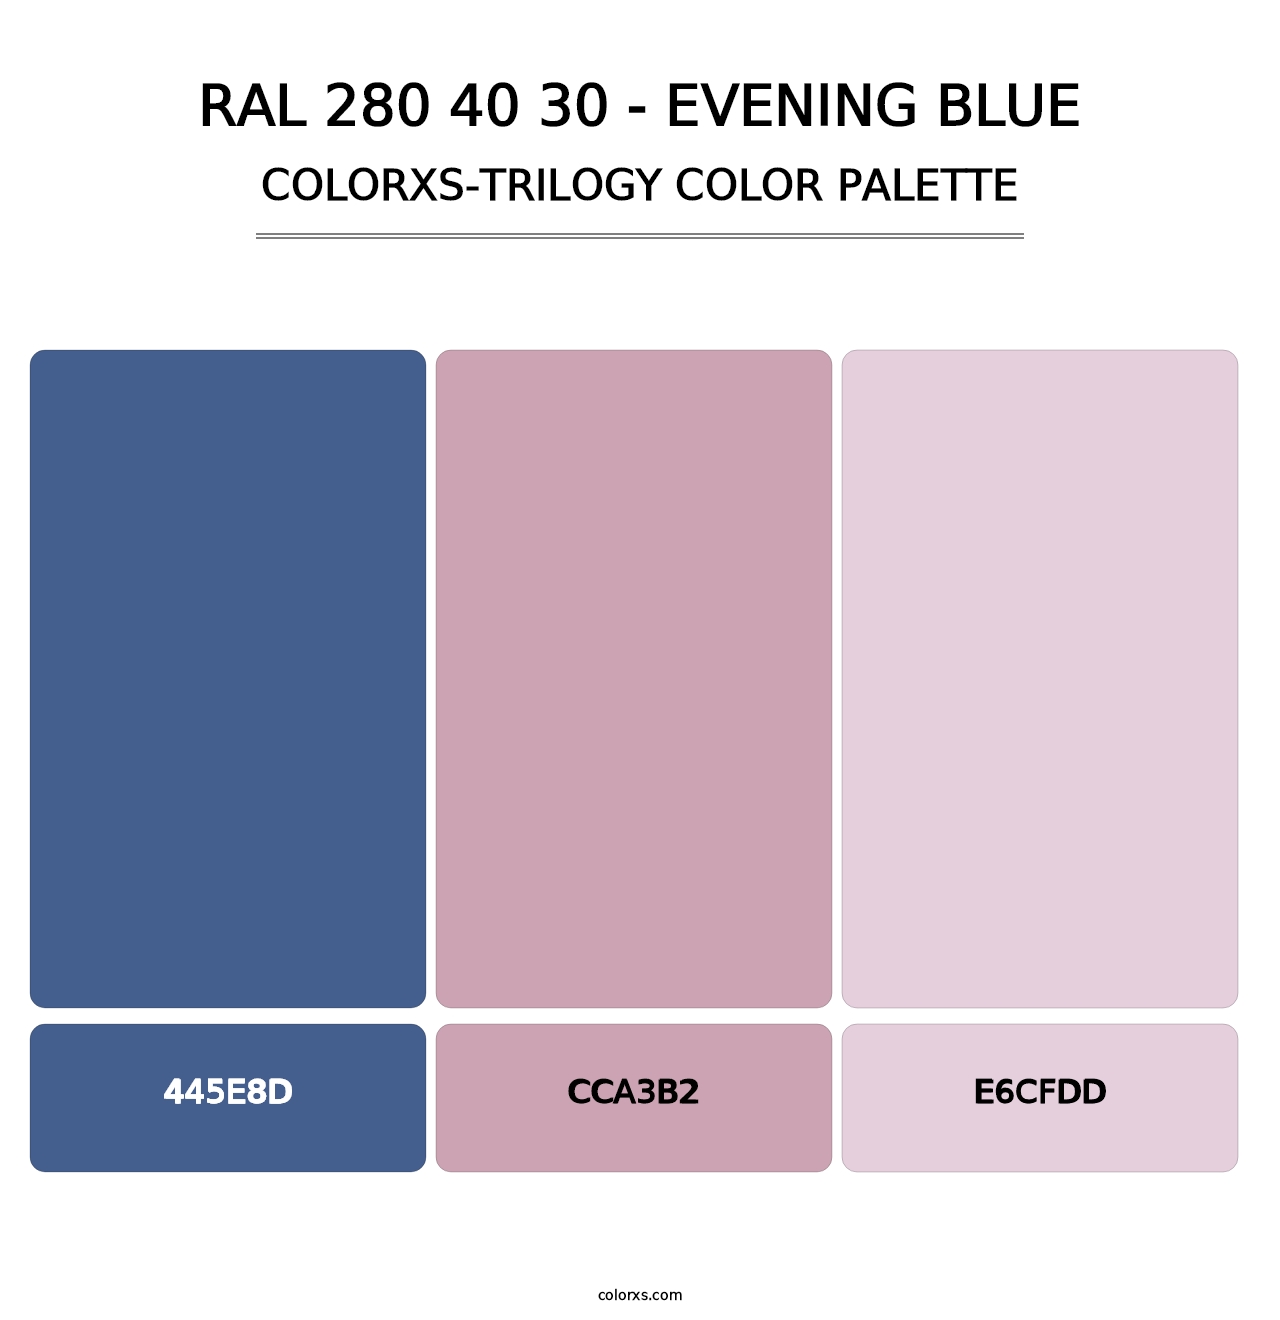 RAL 280 40 30 - Evening Blue - Colorxs Trilogy Palette